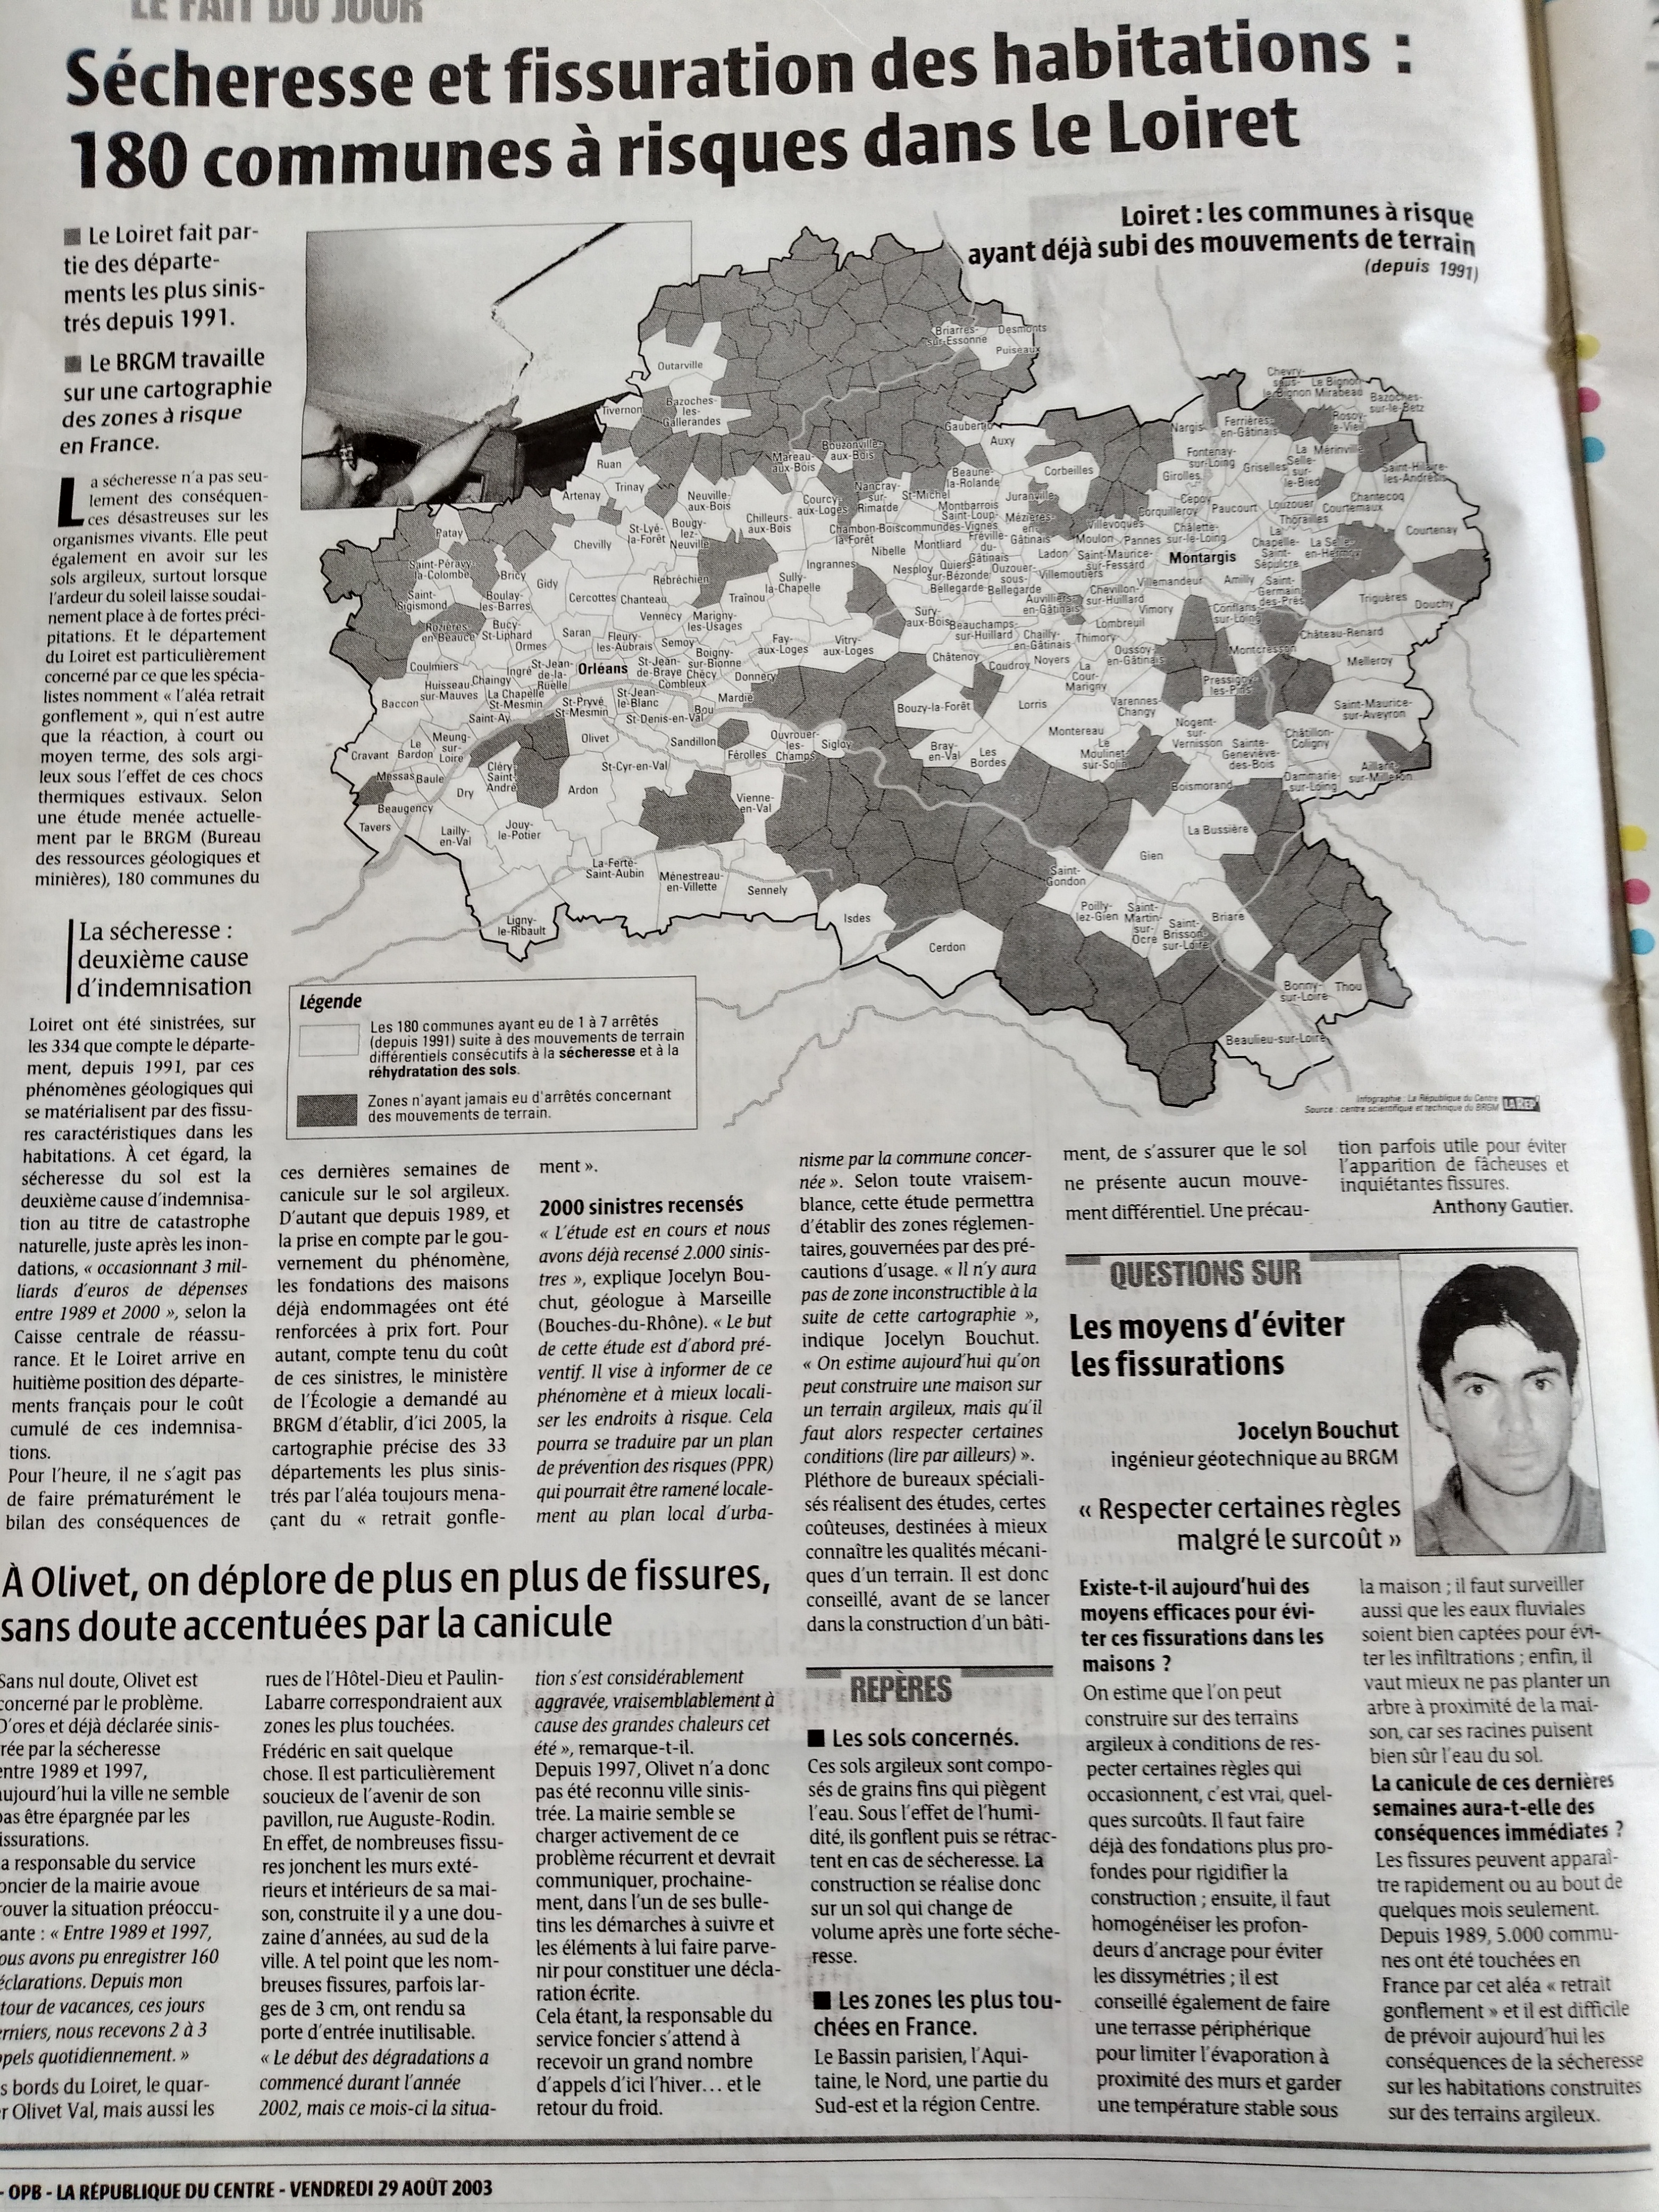 Sécheresse et fissuration des habitations : 180 communes à risque dans le Loiret  (©archives départementales – république du centre)